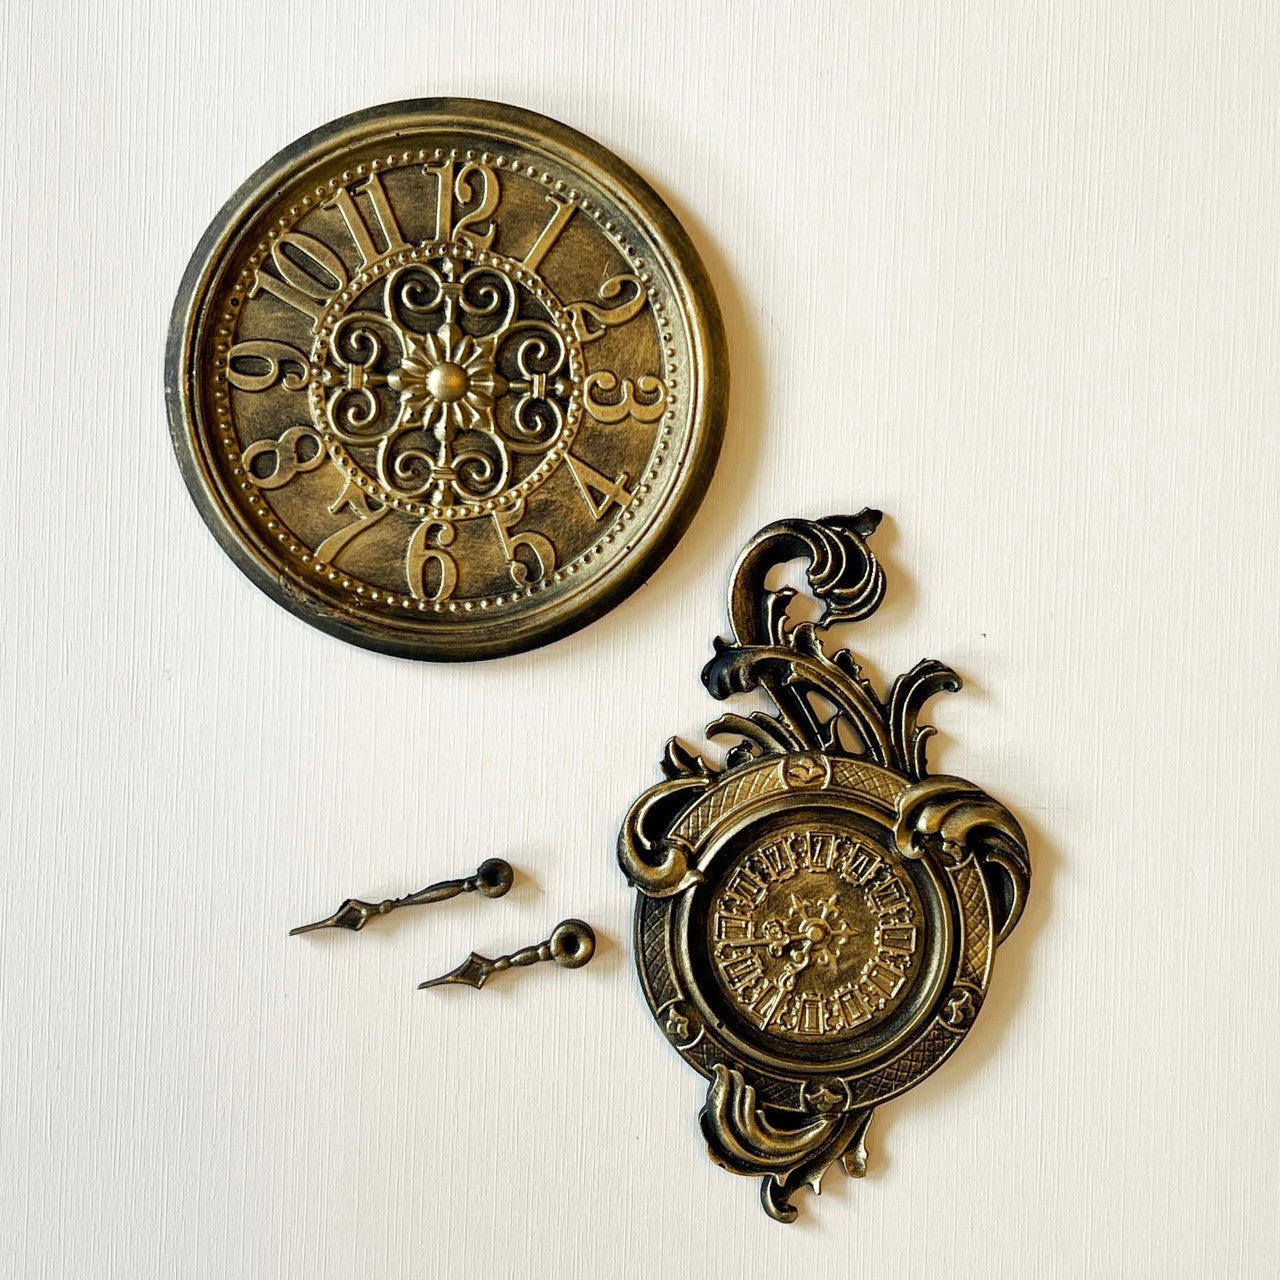 LaBlanche Rococo  Clocks Silicone Mould Limited Edition